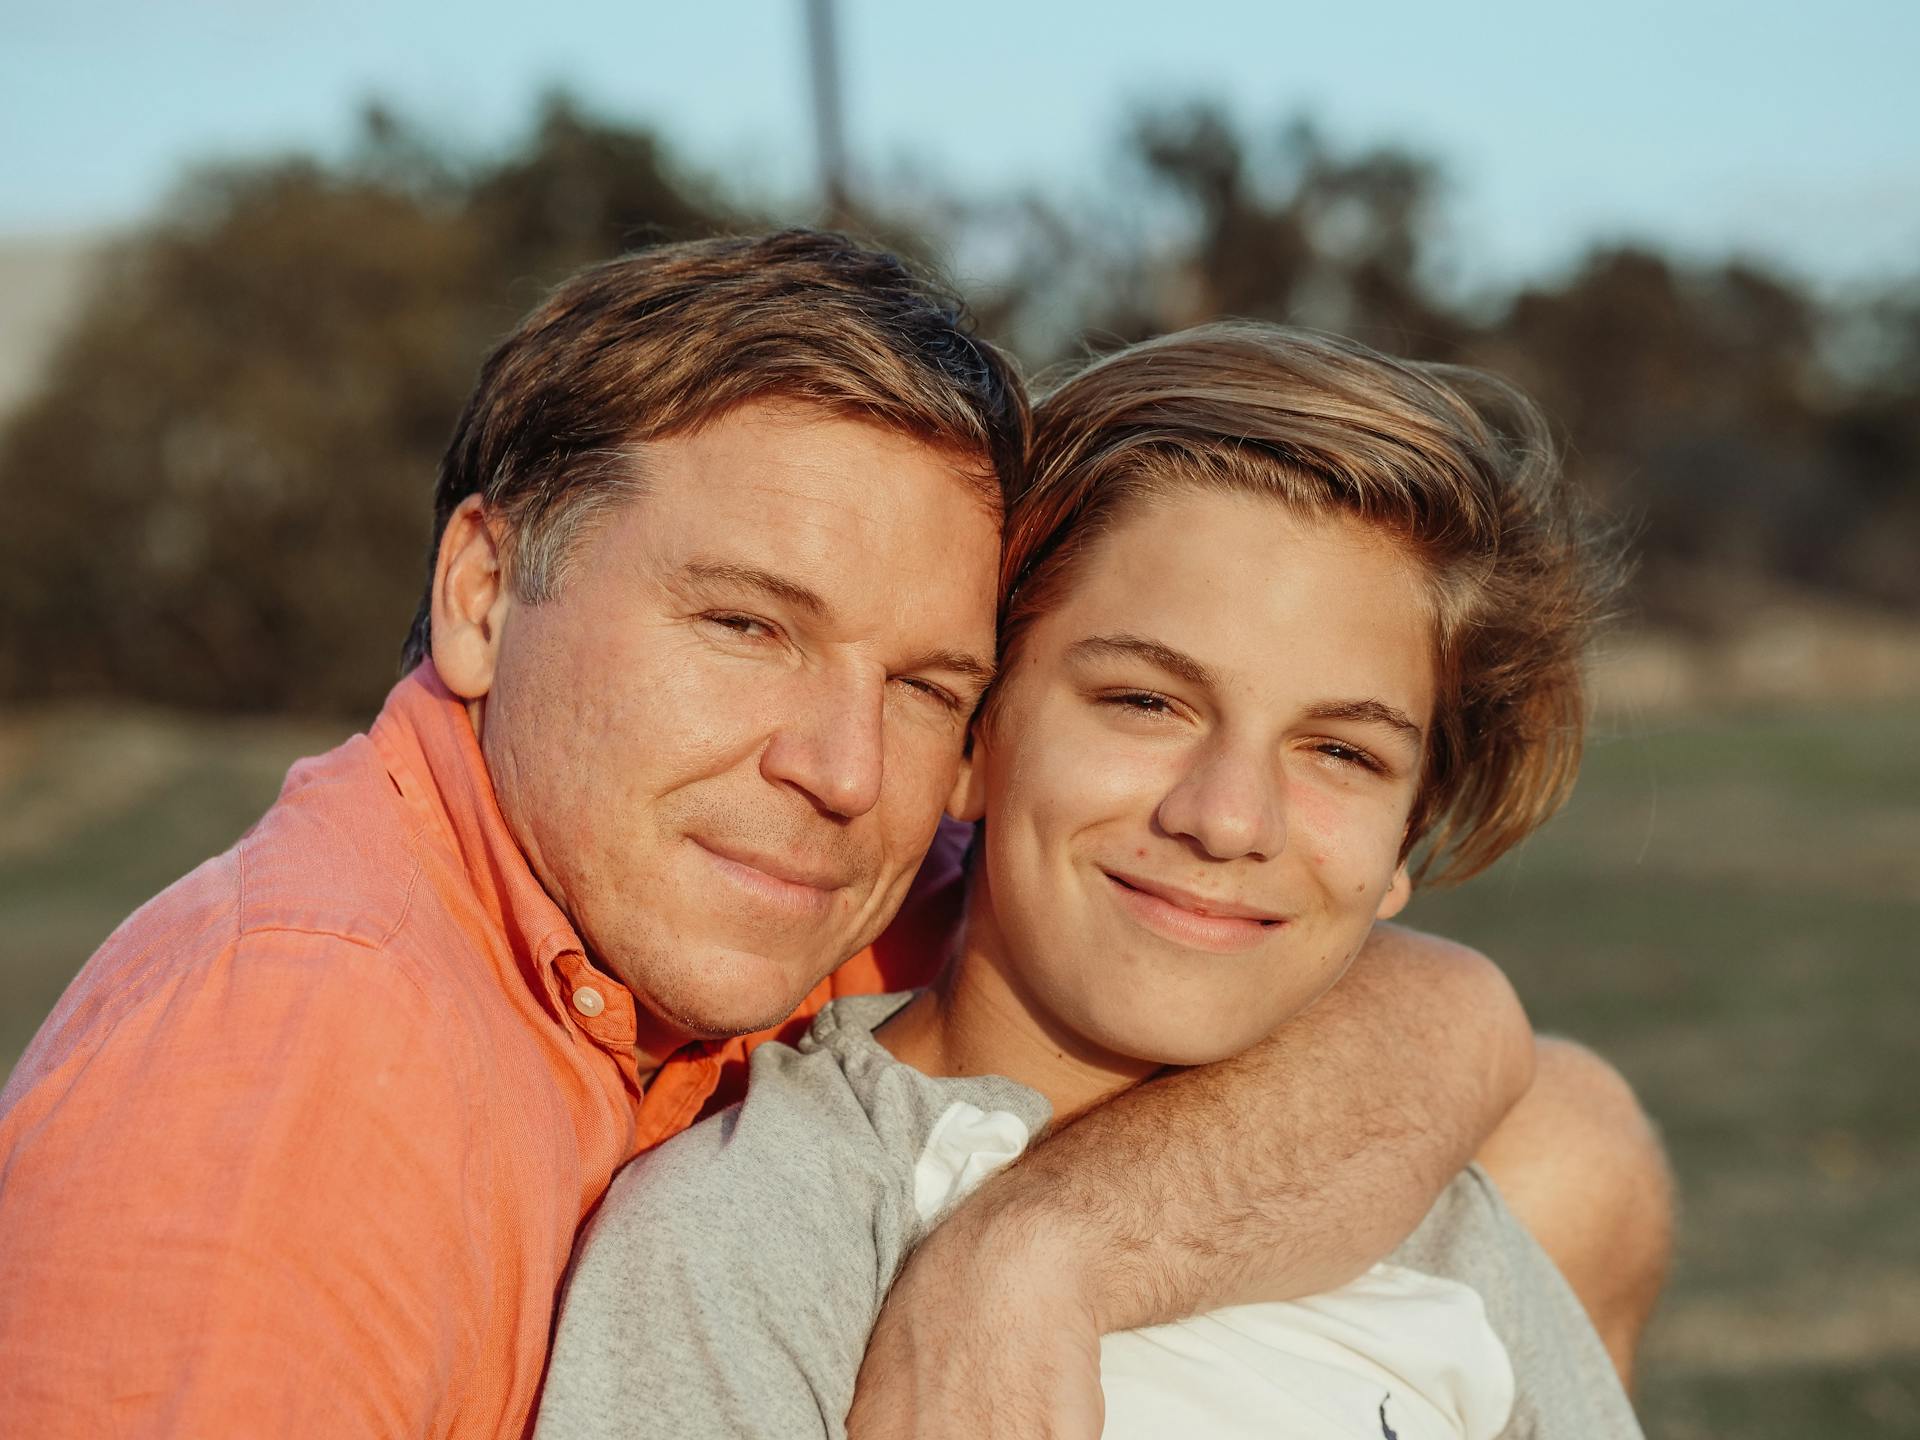 Un padre y su hijo posando juntos | Fuente: Pexels